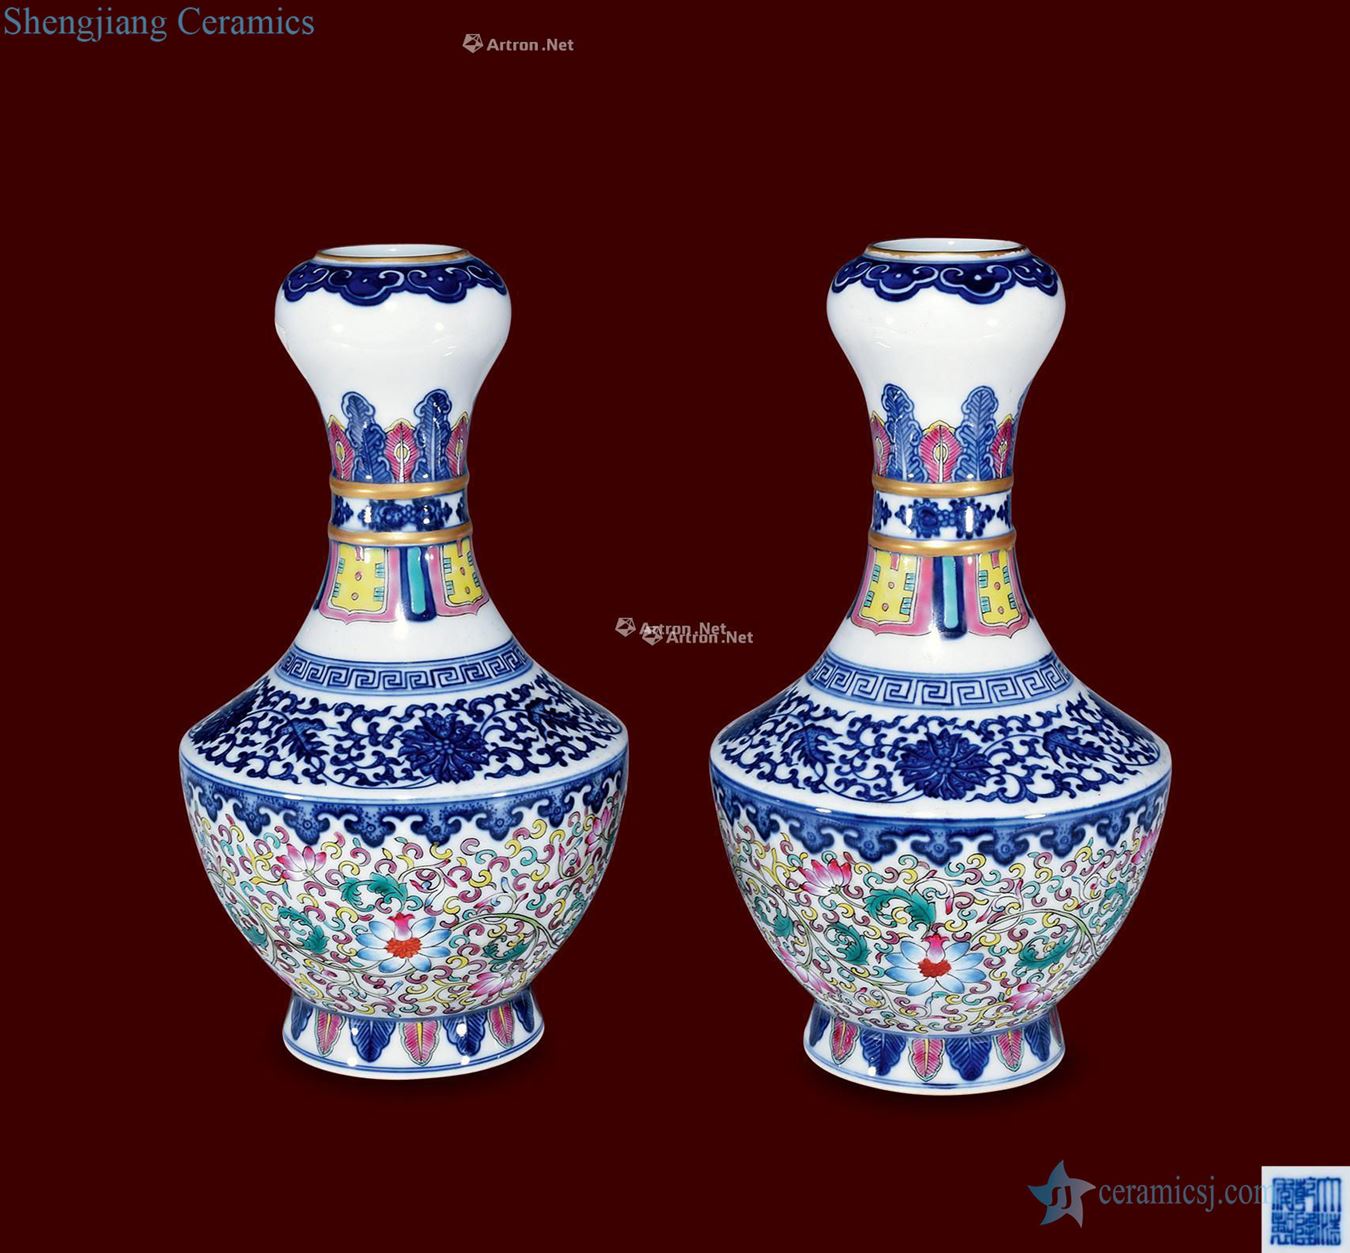 Qing porcelain enamel floral print garlic bottle (a)